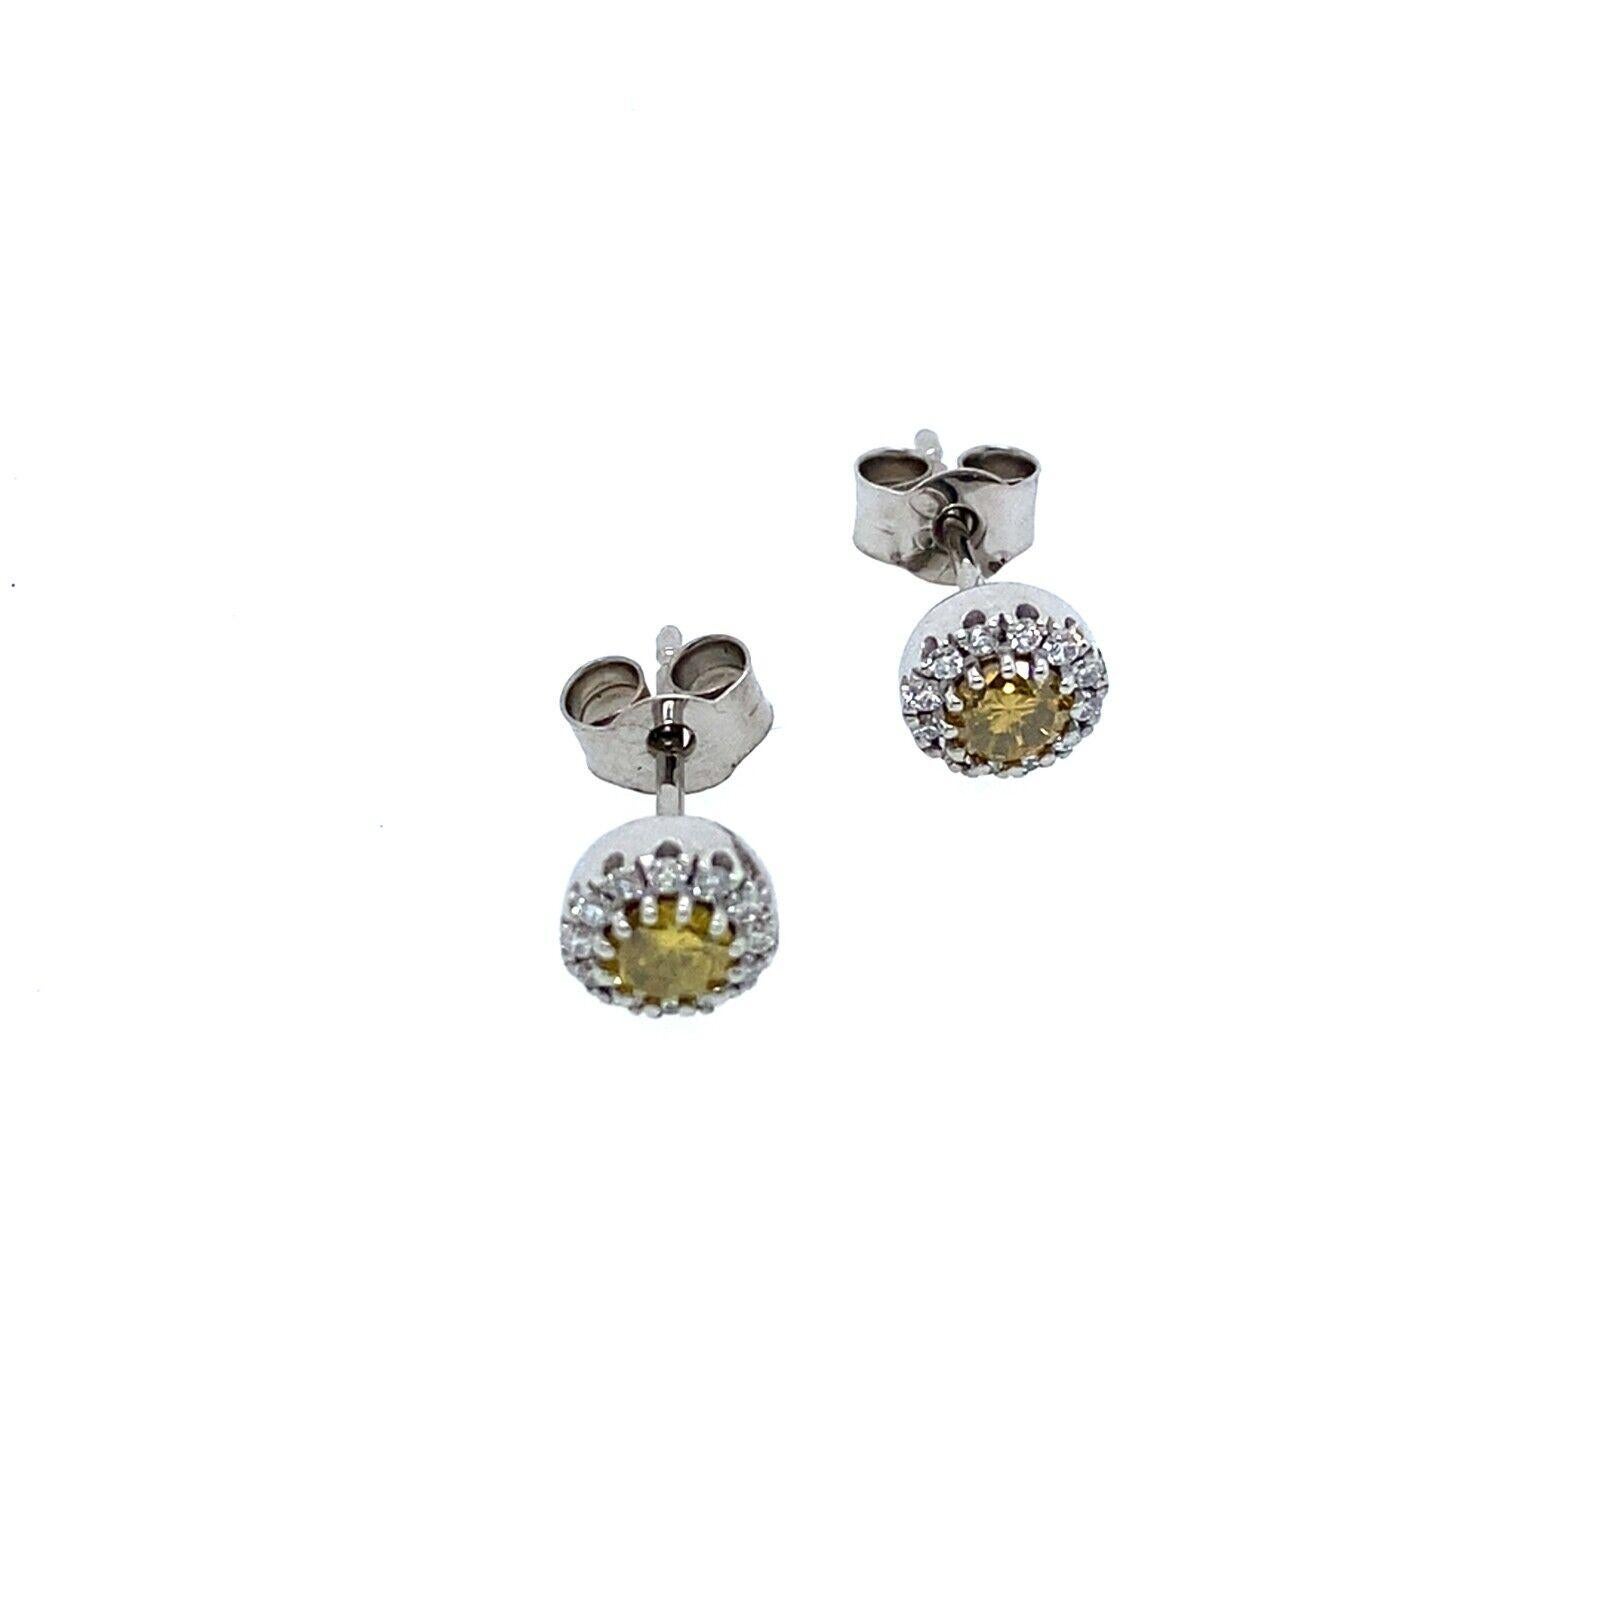 Dieses Paar Ohrringe ist mit 2 intensiv gelben Diamanten besetzt, die von 0,16ct weißen Diamanten G/VS umgeben sind. Der gelbe Diamant ist ein natürlicher Diamant und die weißen Diamanten sind VS-Diamanten, gefasst in 18 Karat Weißgold und die